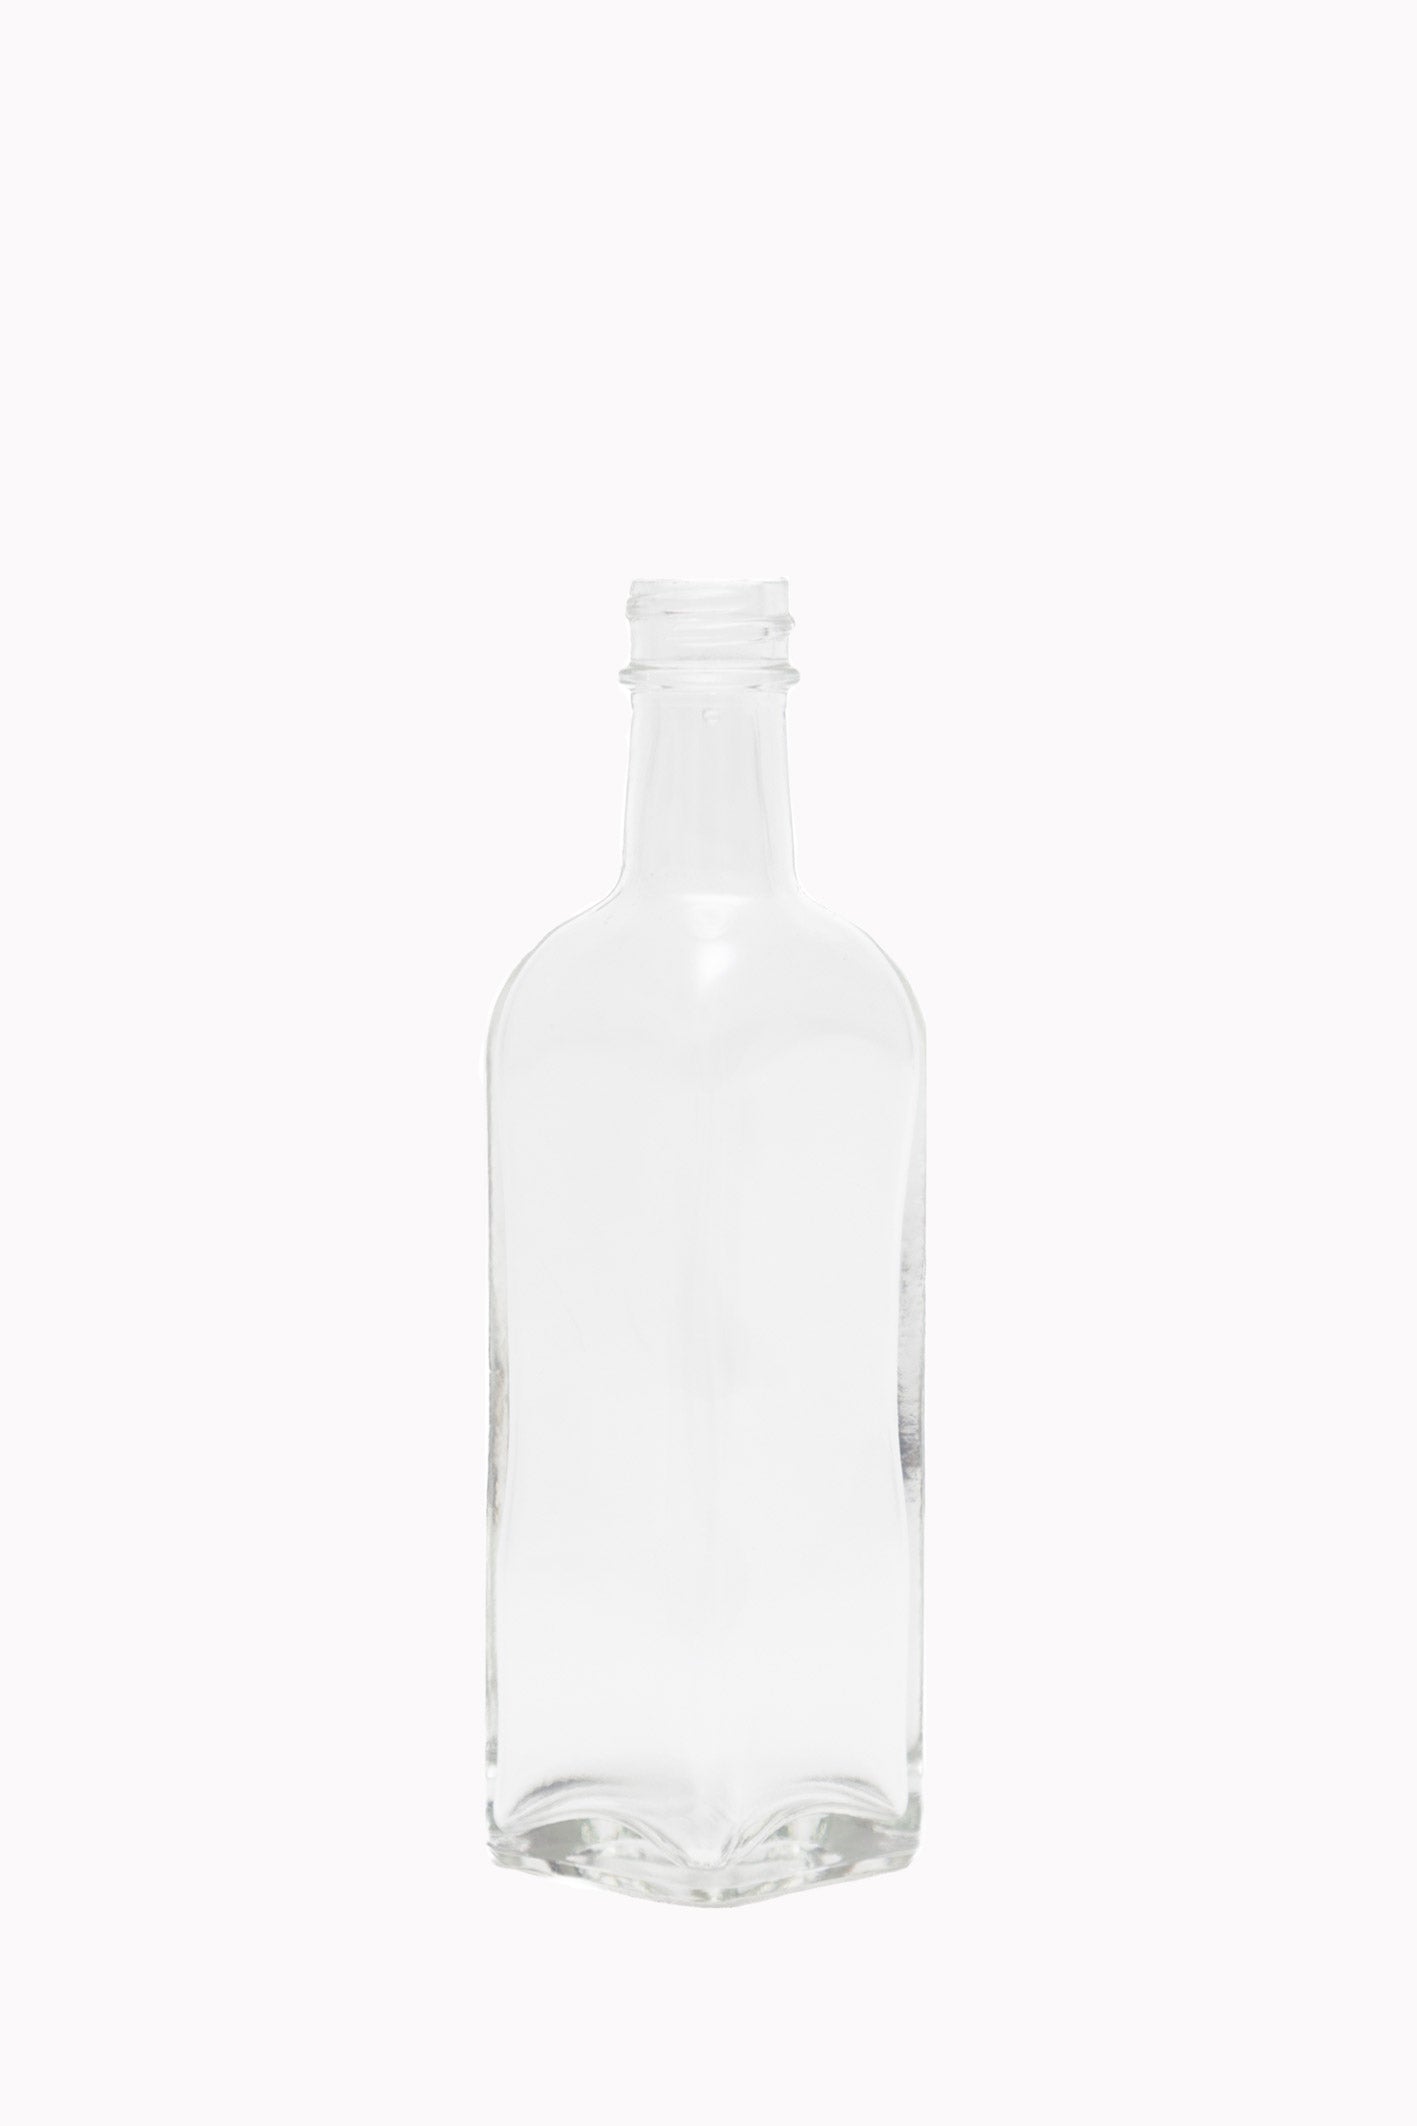 This is Quadra FL, California Bottles’ smallest, rarest offering.